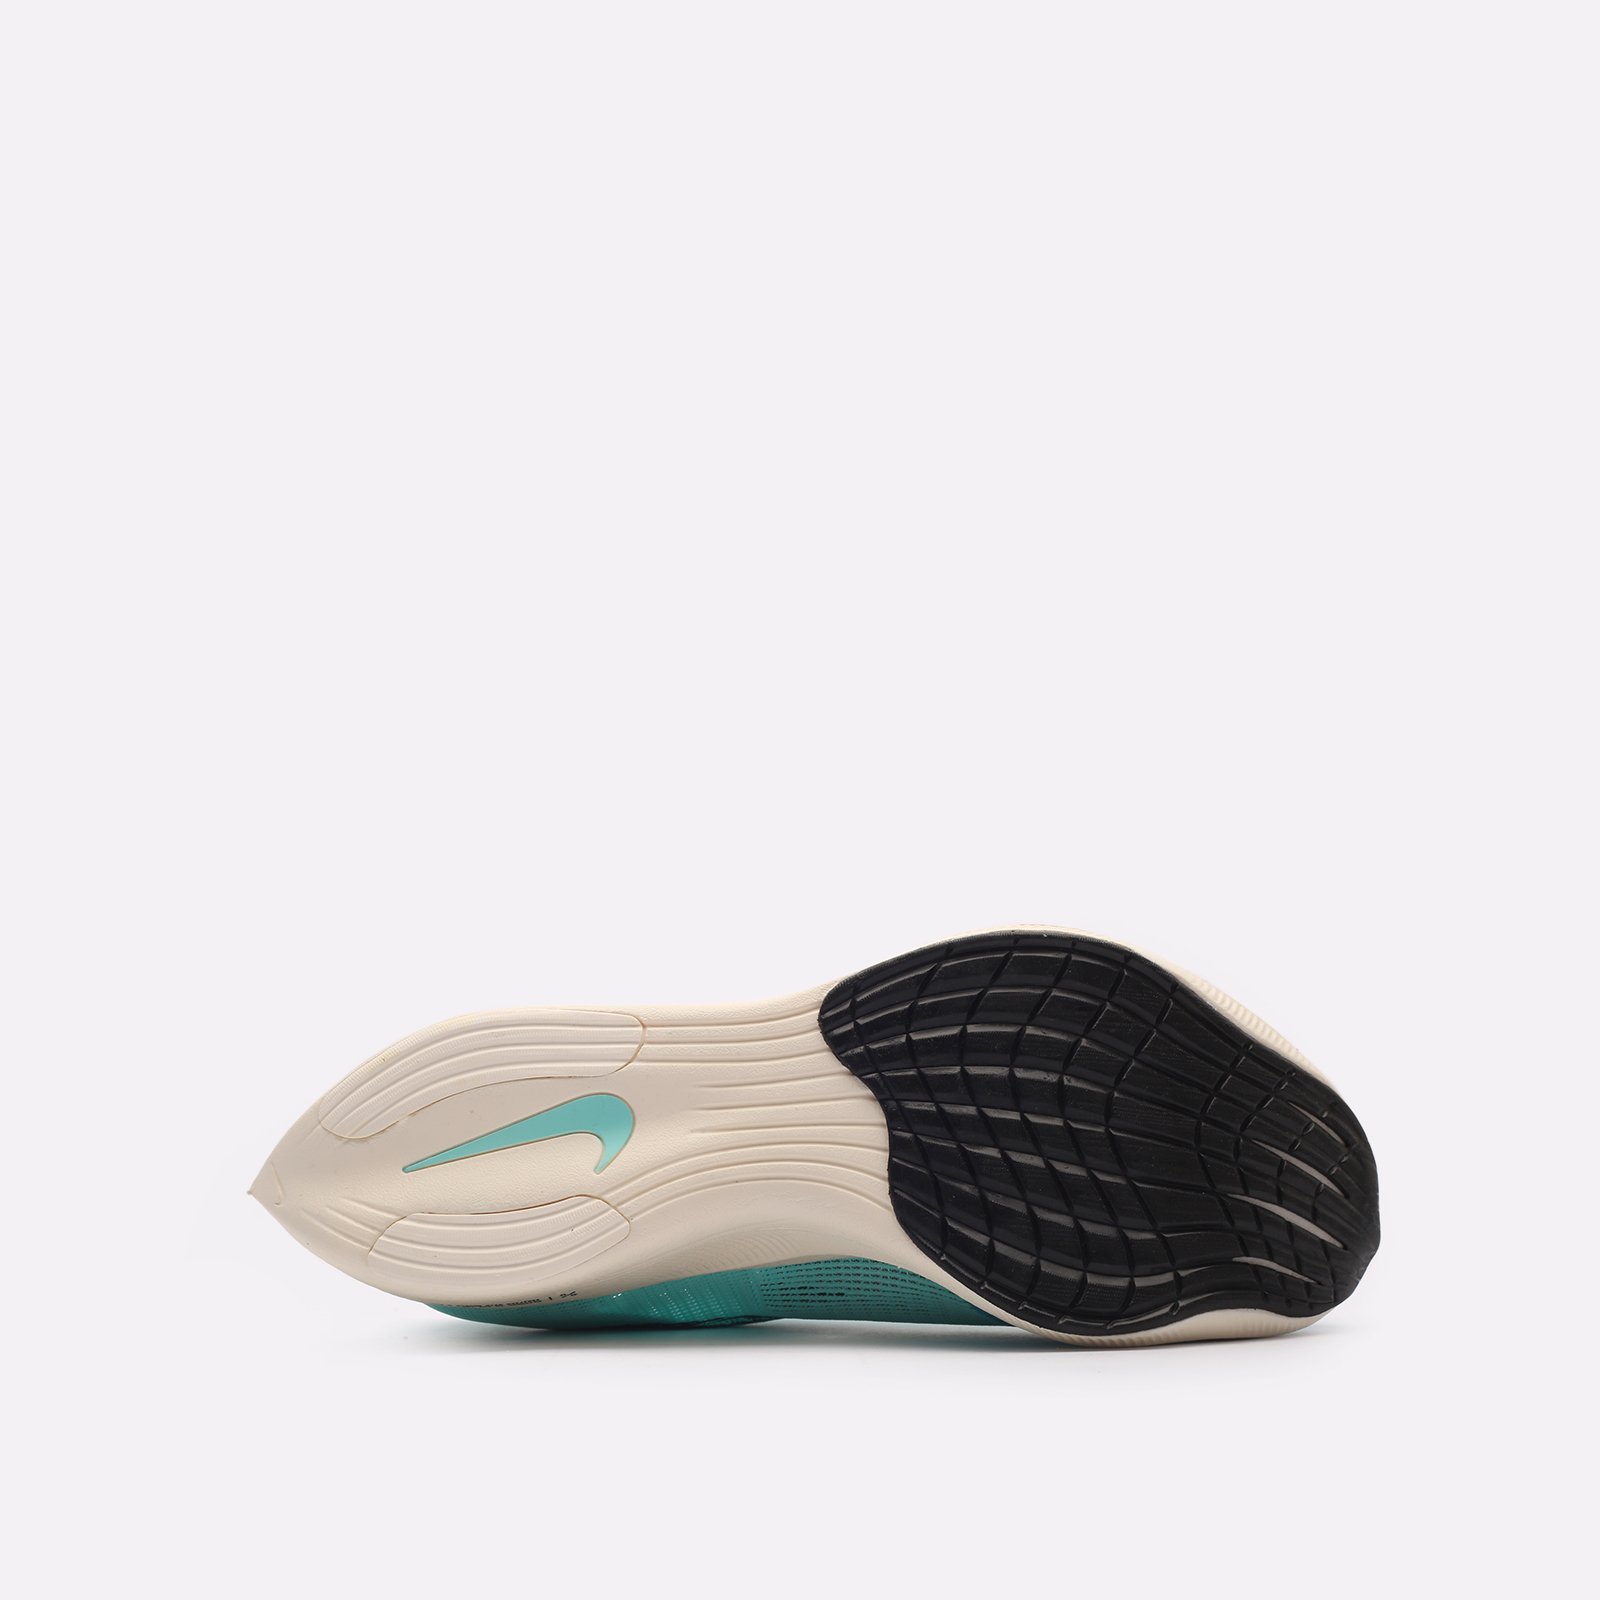 мужские кроссовки Nike ZoomX Vaporfly  (CU4111-300)  - цена, описание, фото 5